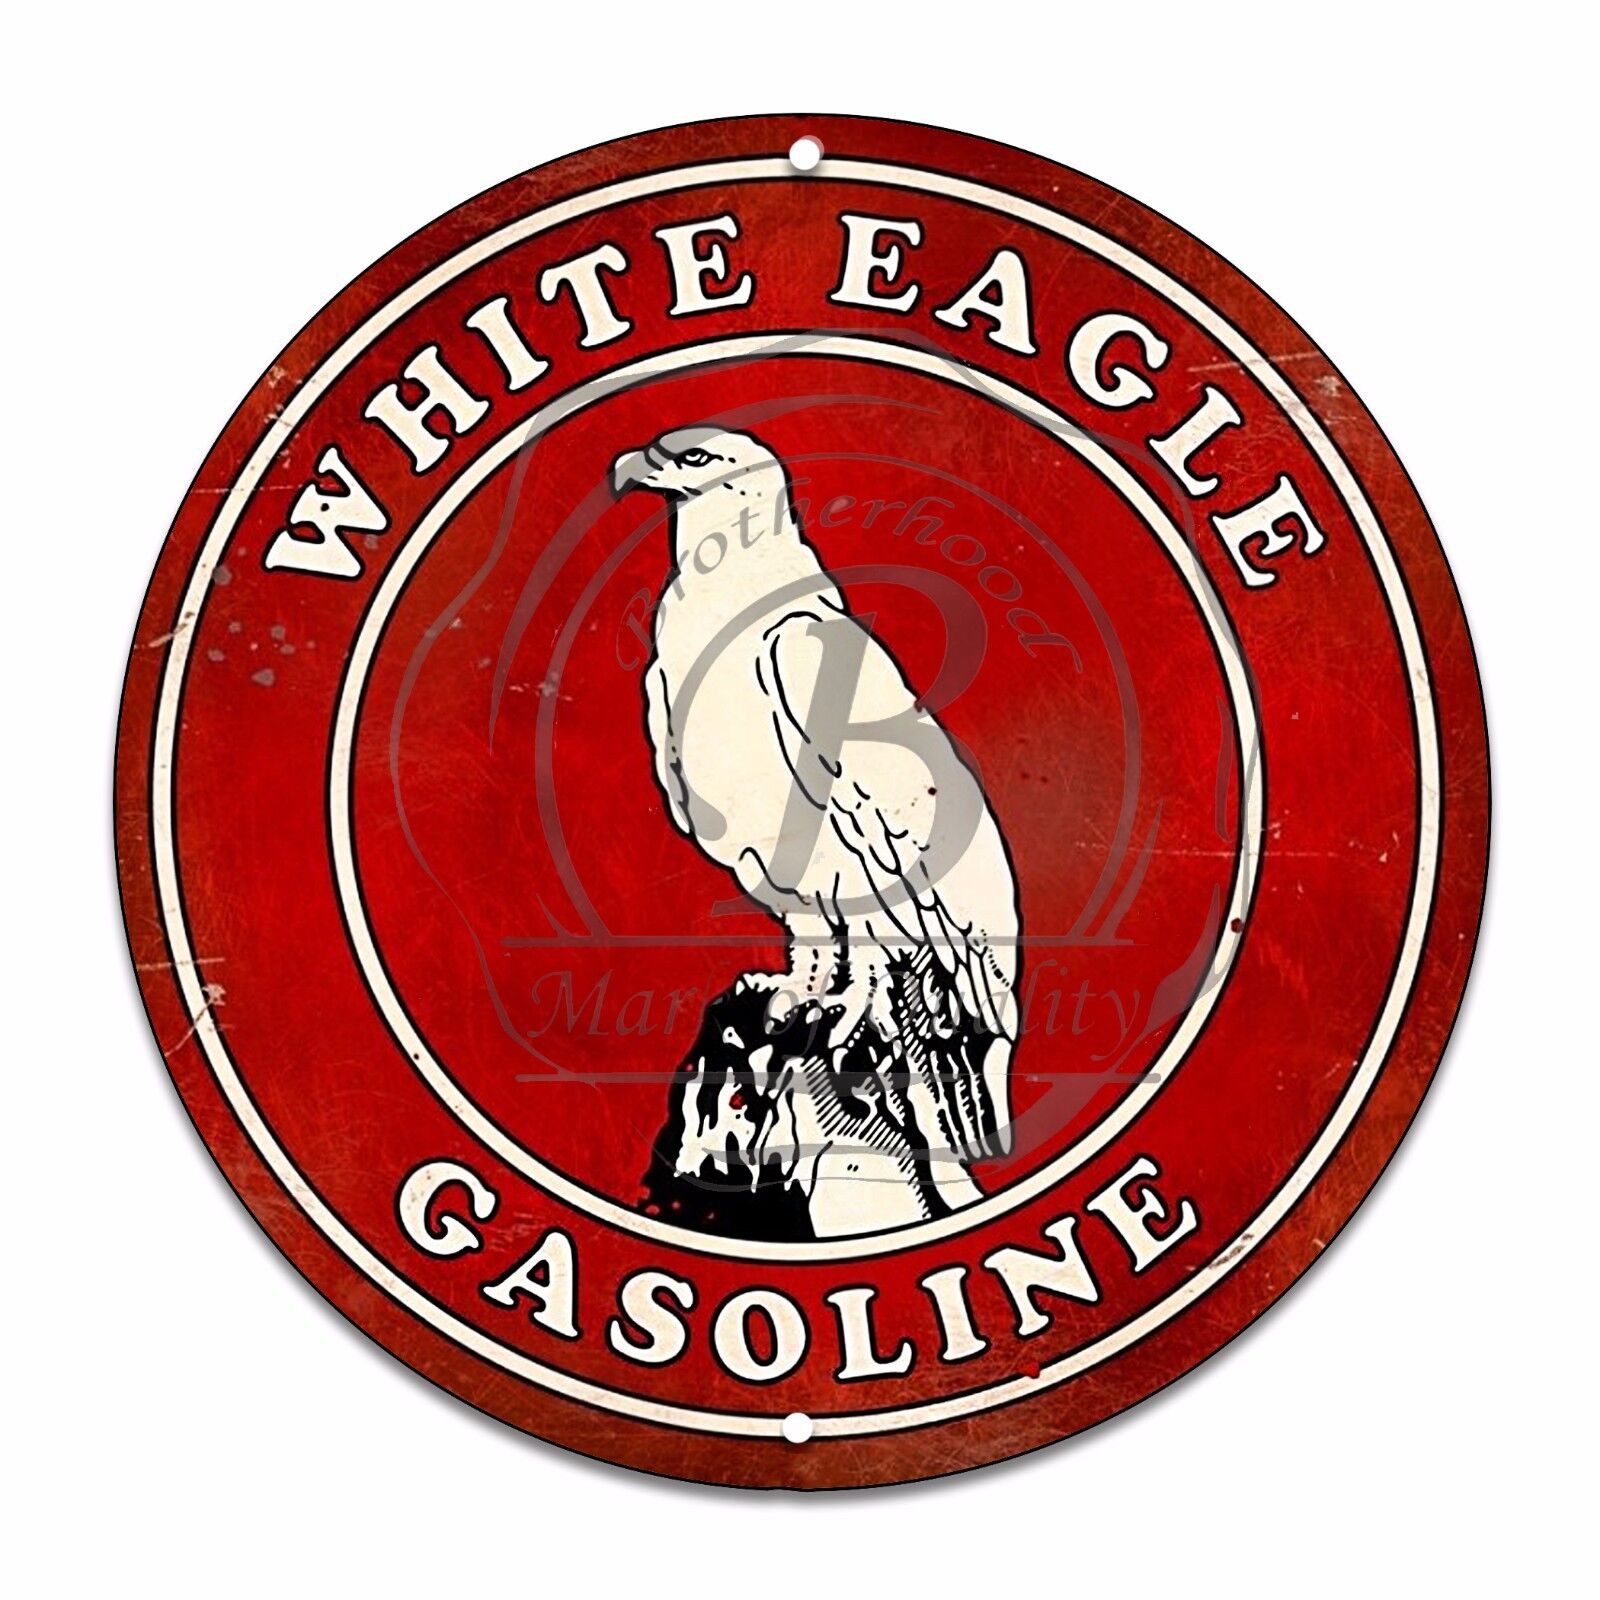 Vintage Design Sign Metal Decor Gas and Oil Sign - White Eagle Gasoline